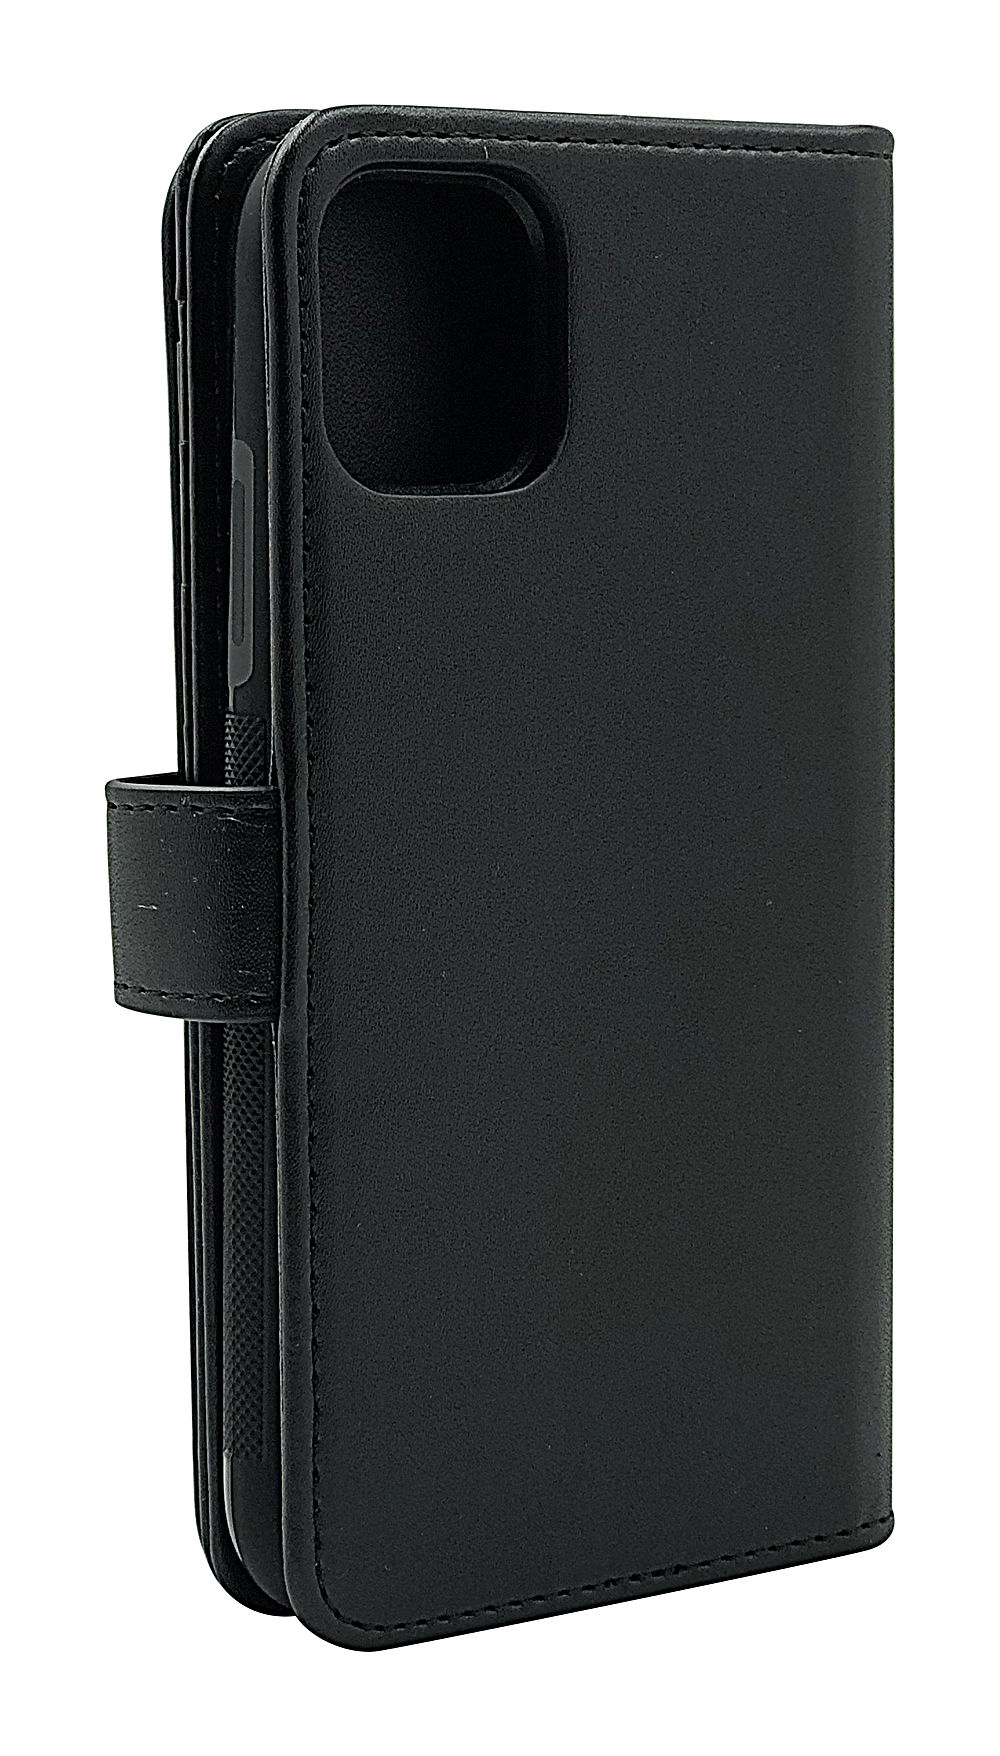 Skimblocker XL Magnet Wallet iPhone 11 (6.1)